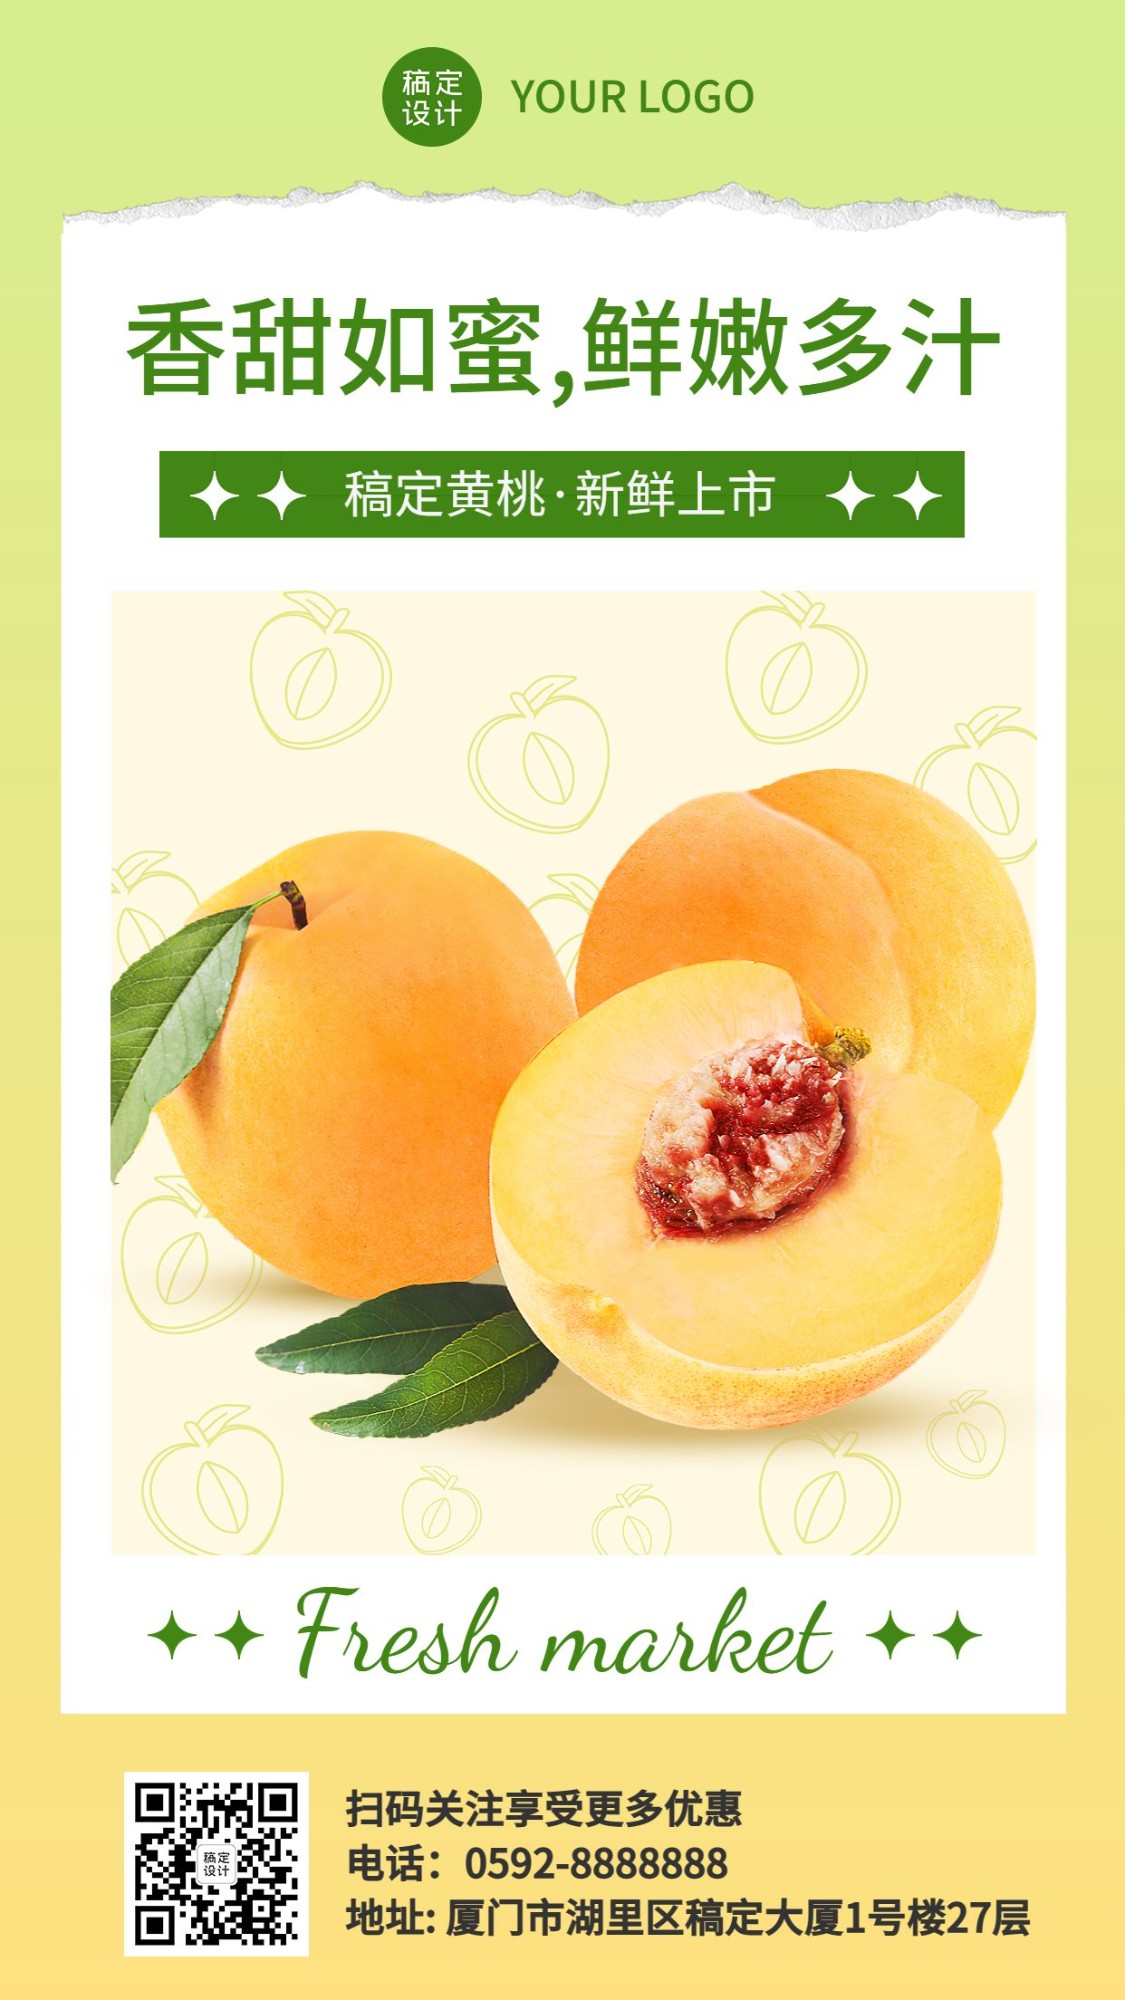 食品生鲜水果黄桃产品展示竖版海报